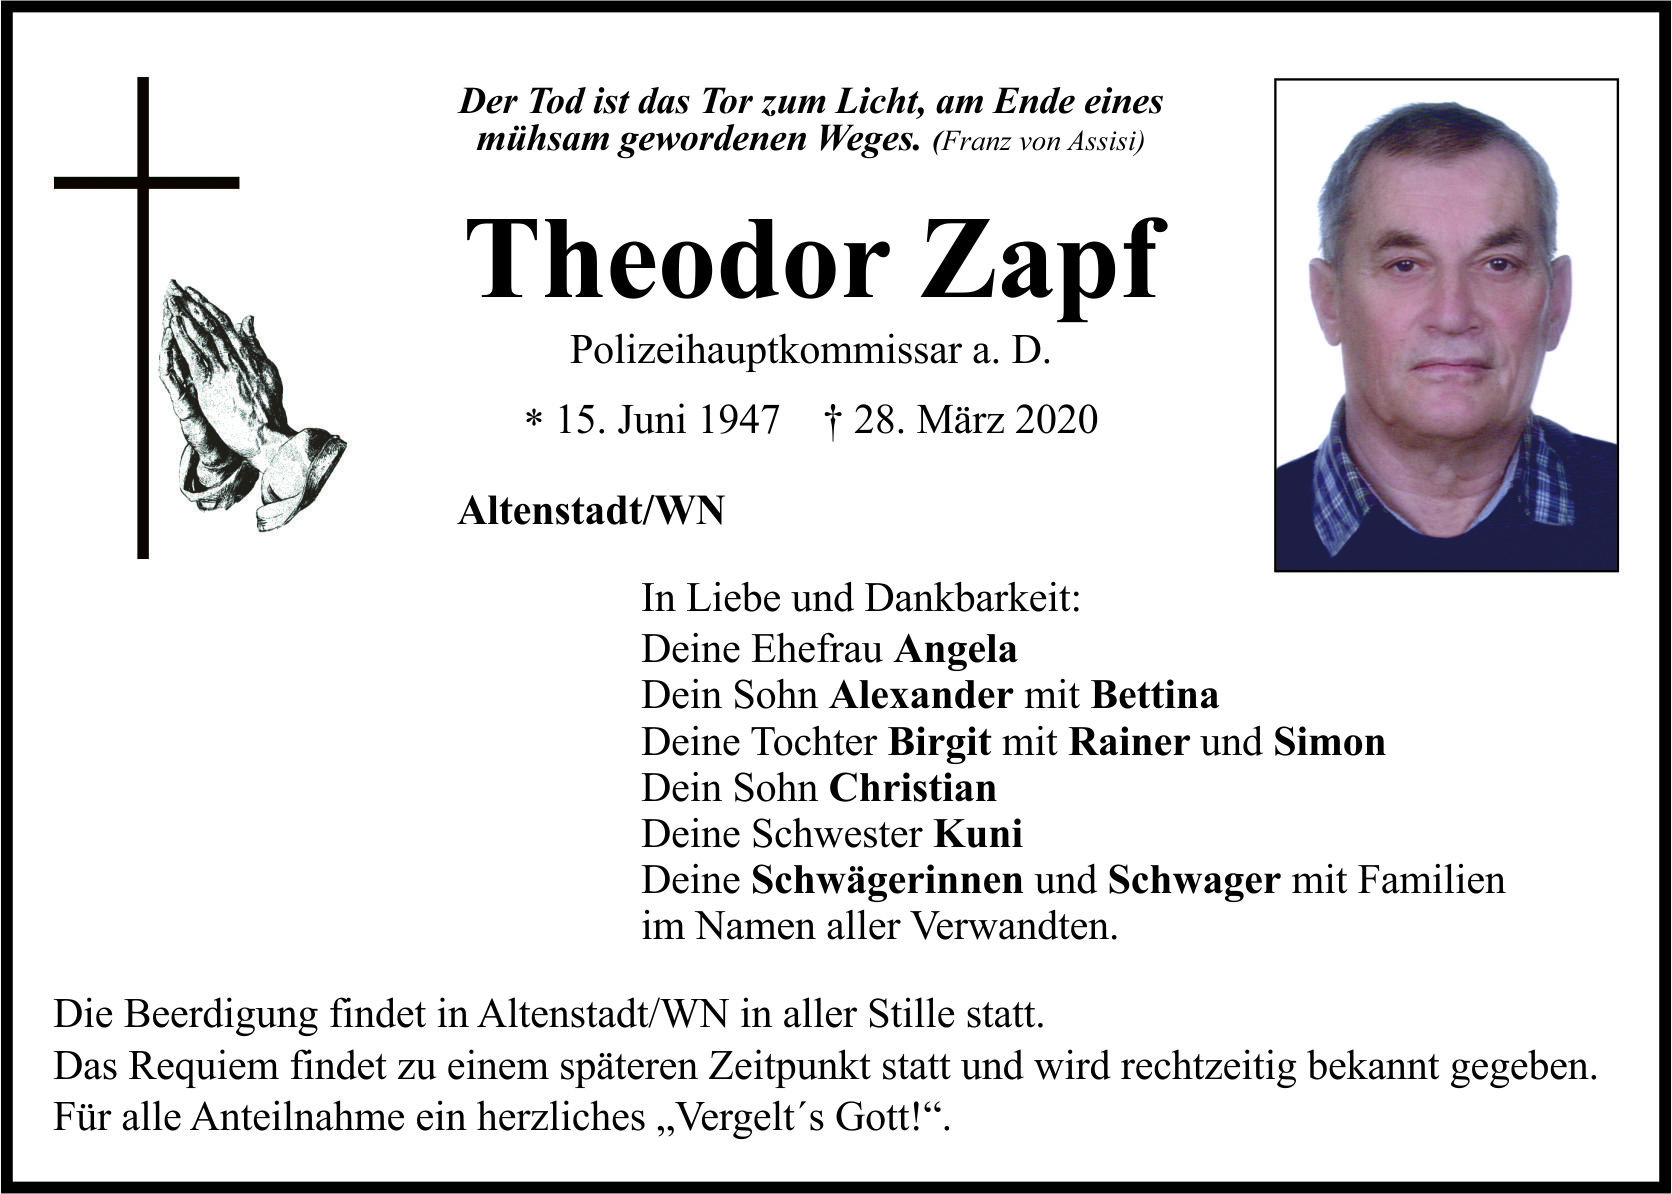 Traueranzeige Theodor Zapf